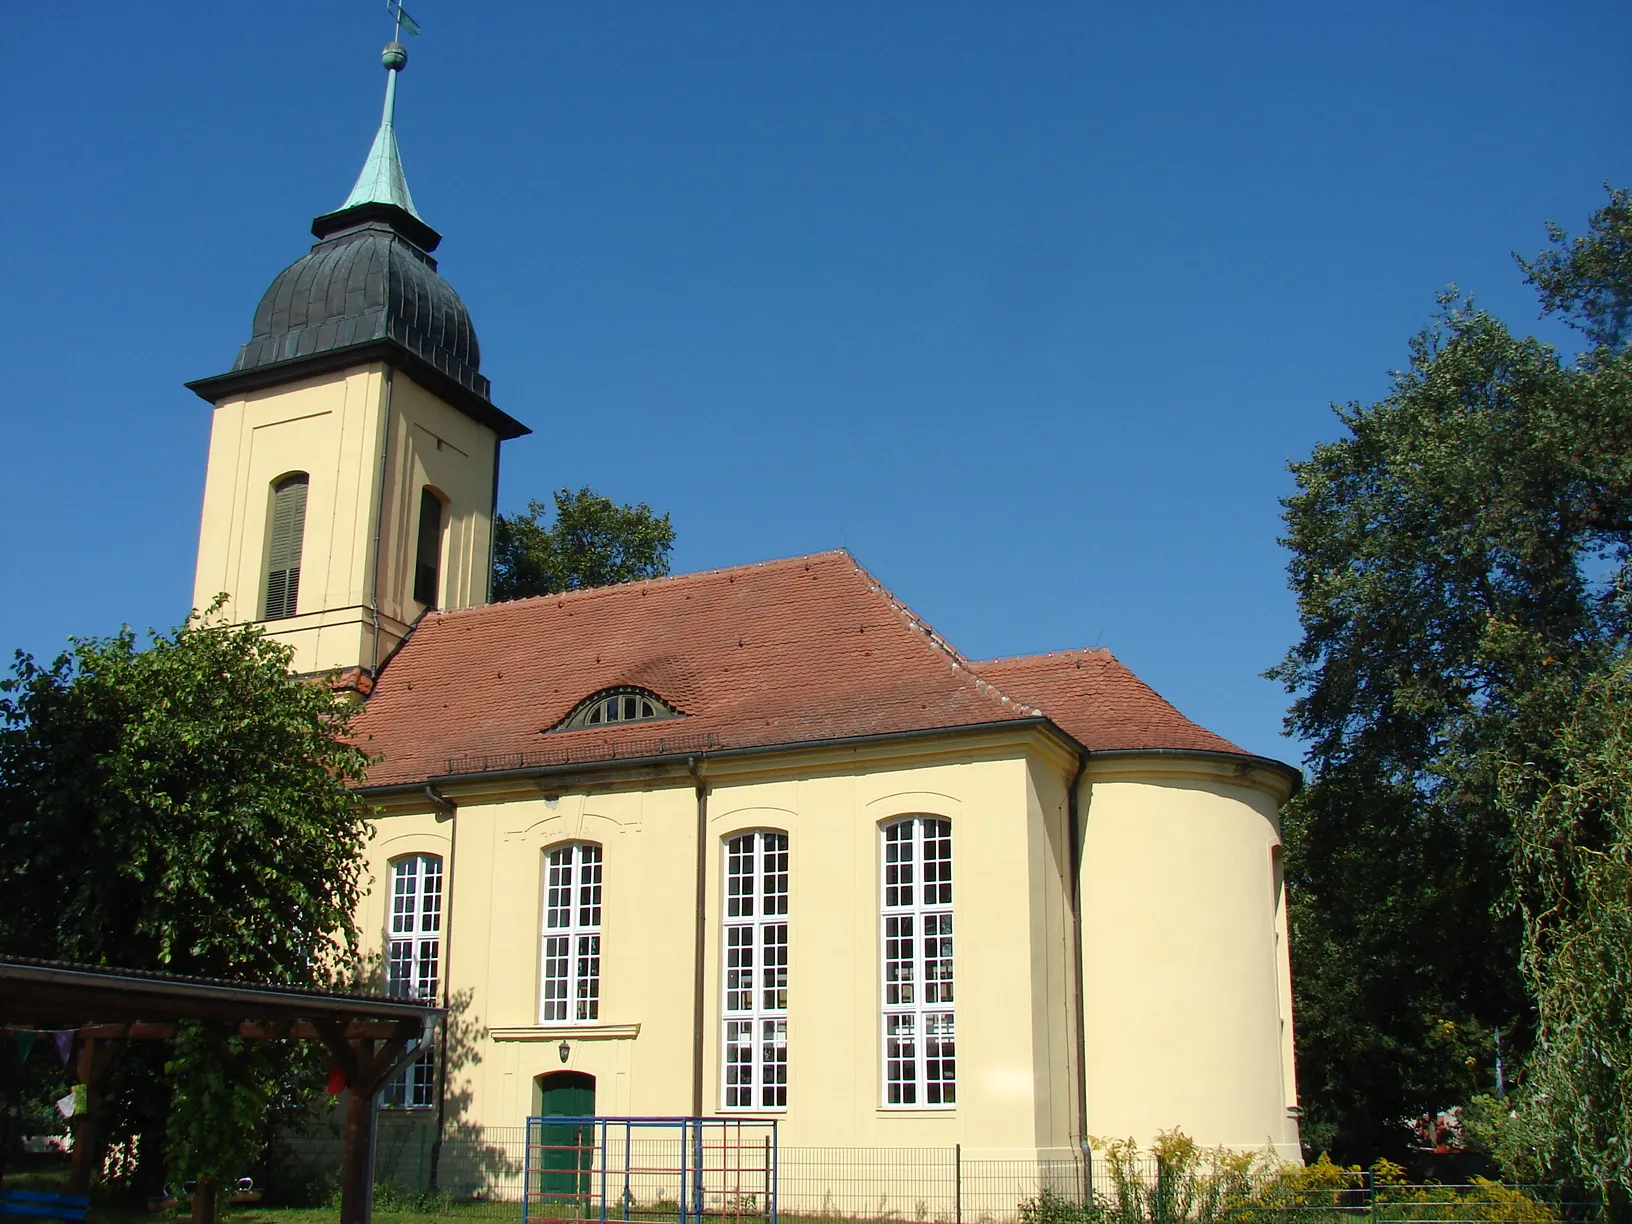 Photo showing: The baroque "Village Church" in Motzen, Brandenburg, Germany.